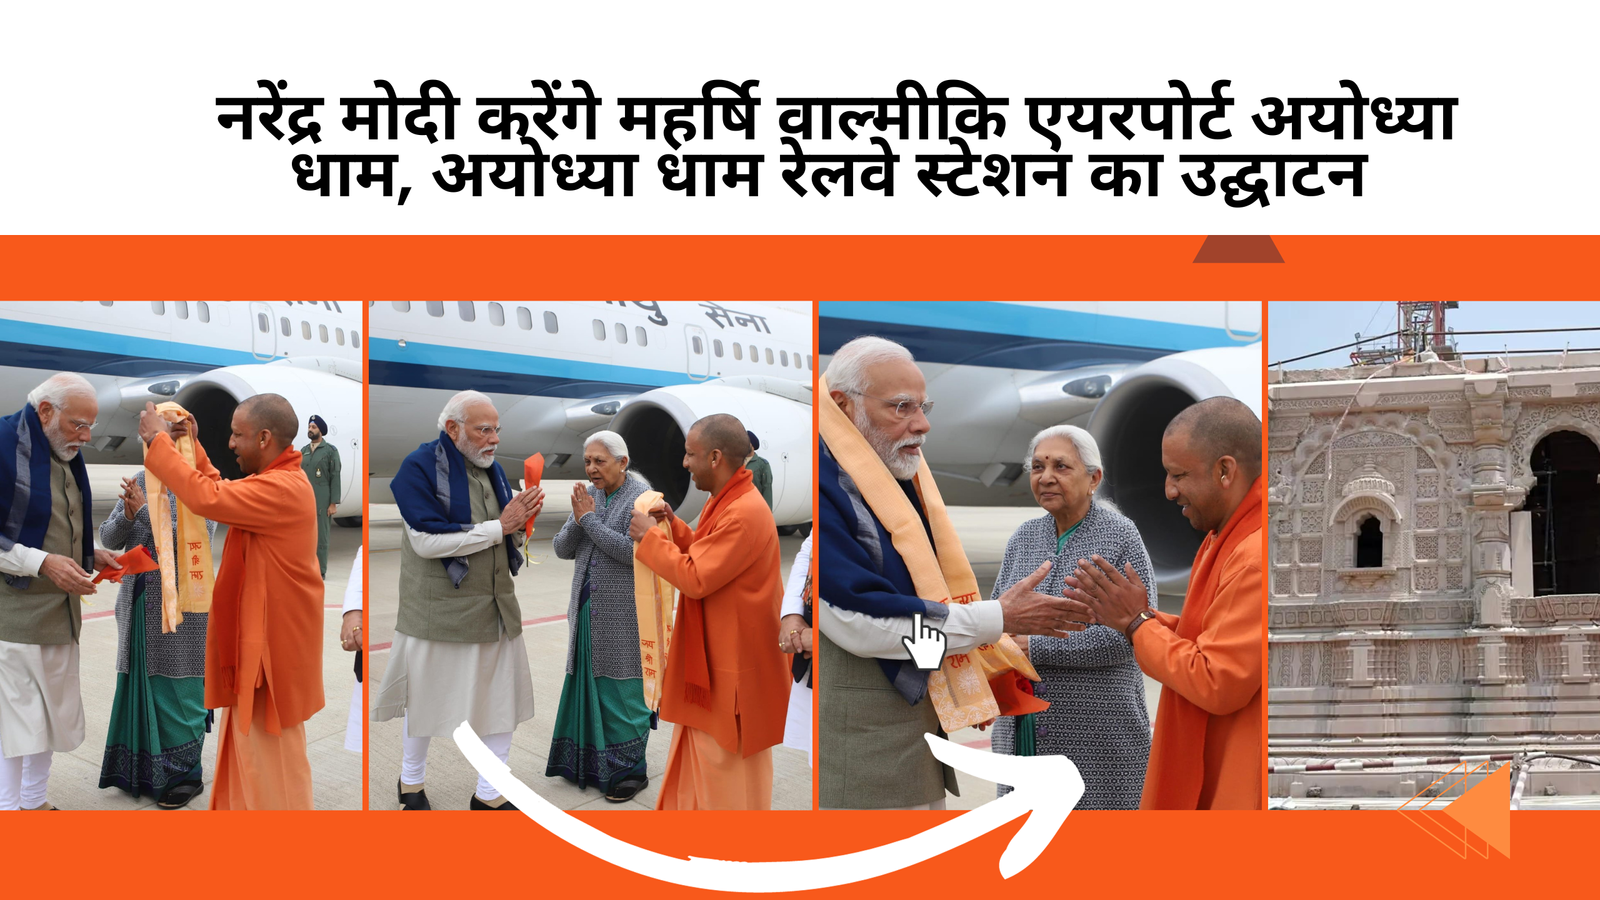 Prime Minister Narendra Modi inaugurates the Ayodhya Dham Junction railway station, in Ayodhya, Uttar Pradesh